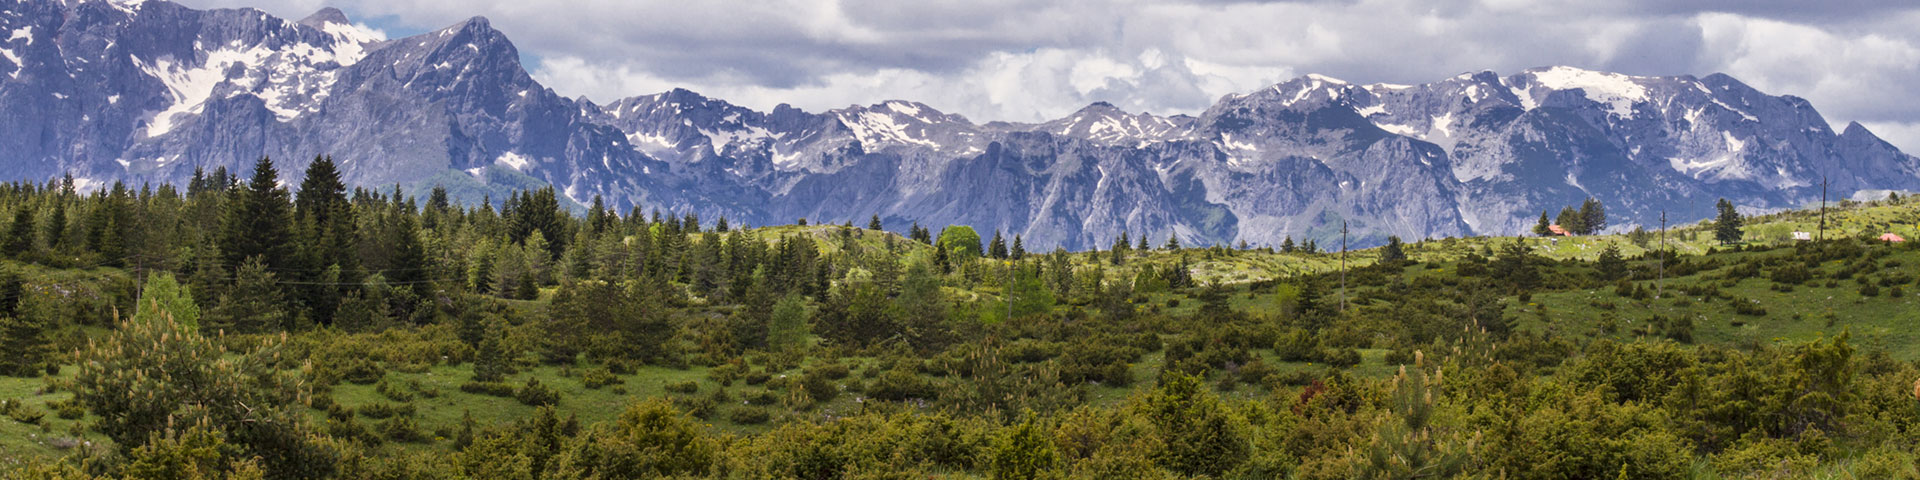 Eine grüne Landschaft mit Bergen im Hintergrund.